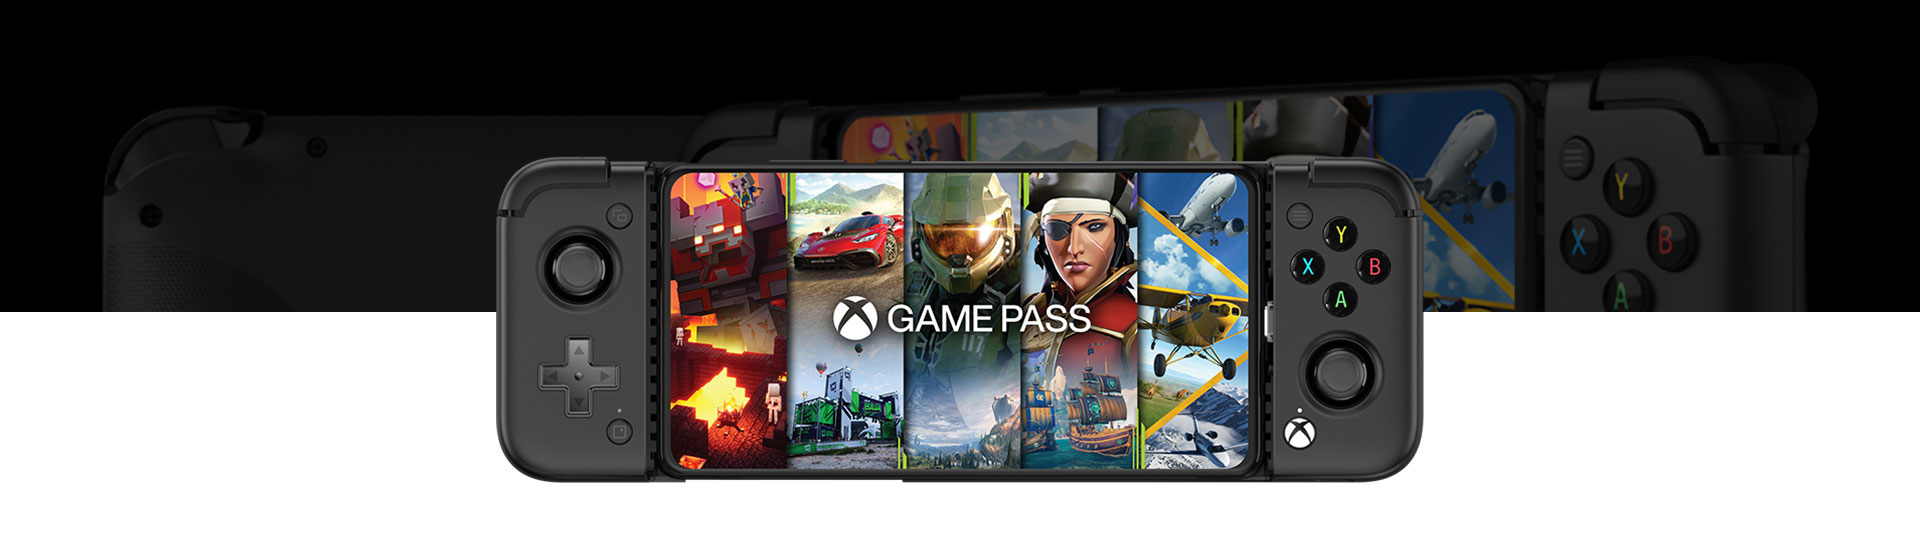 Vista frontal del Mando de juego GameSir X2 Pro Mobile con Game Pass en la pantalla